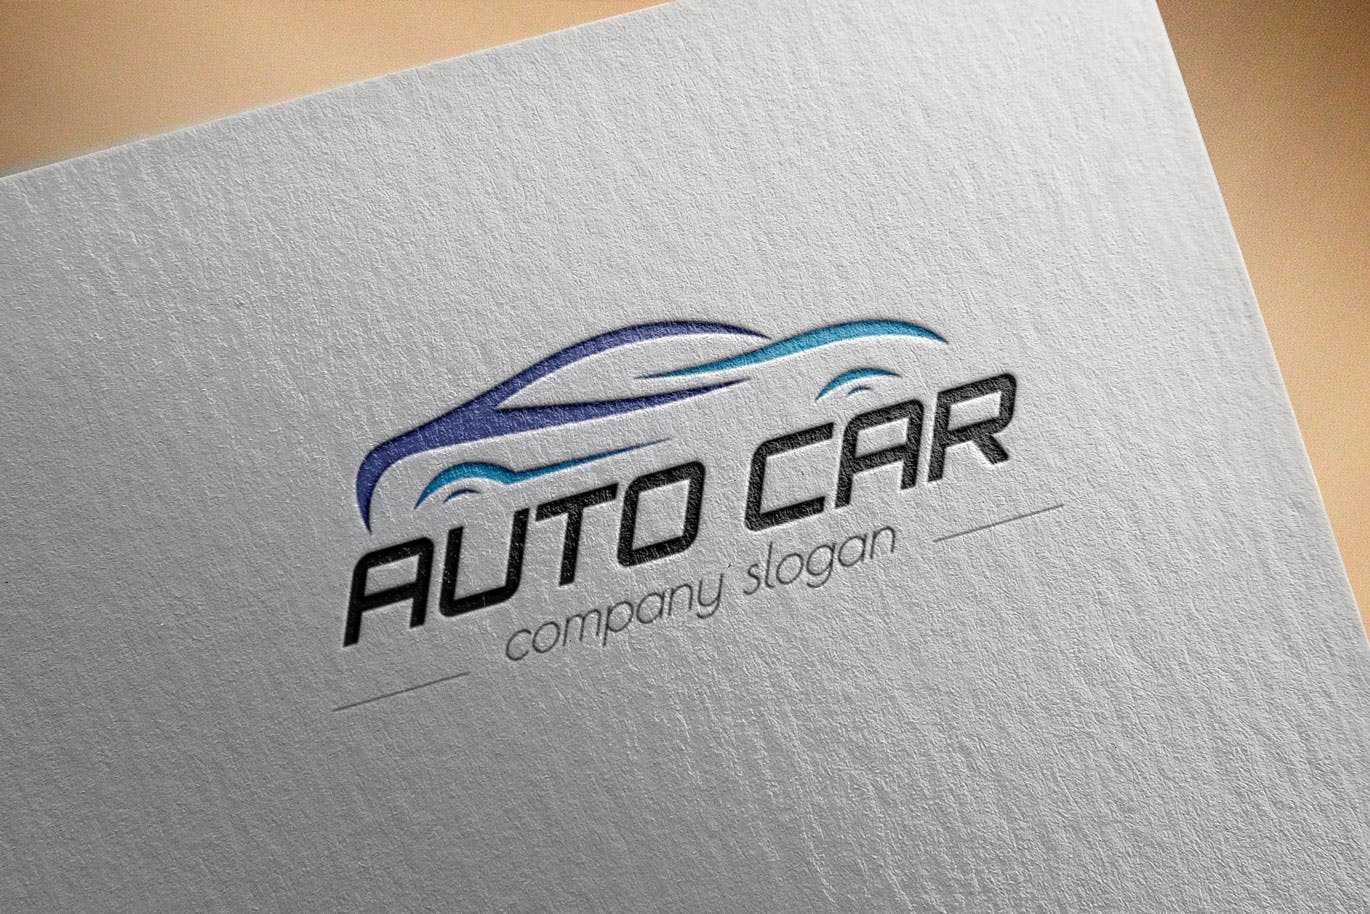 汽车相关企业品牌Logo设计16图库精选模板 Auto Car Business Logo Template插图(2)